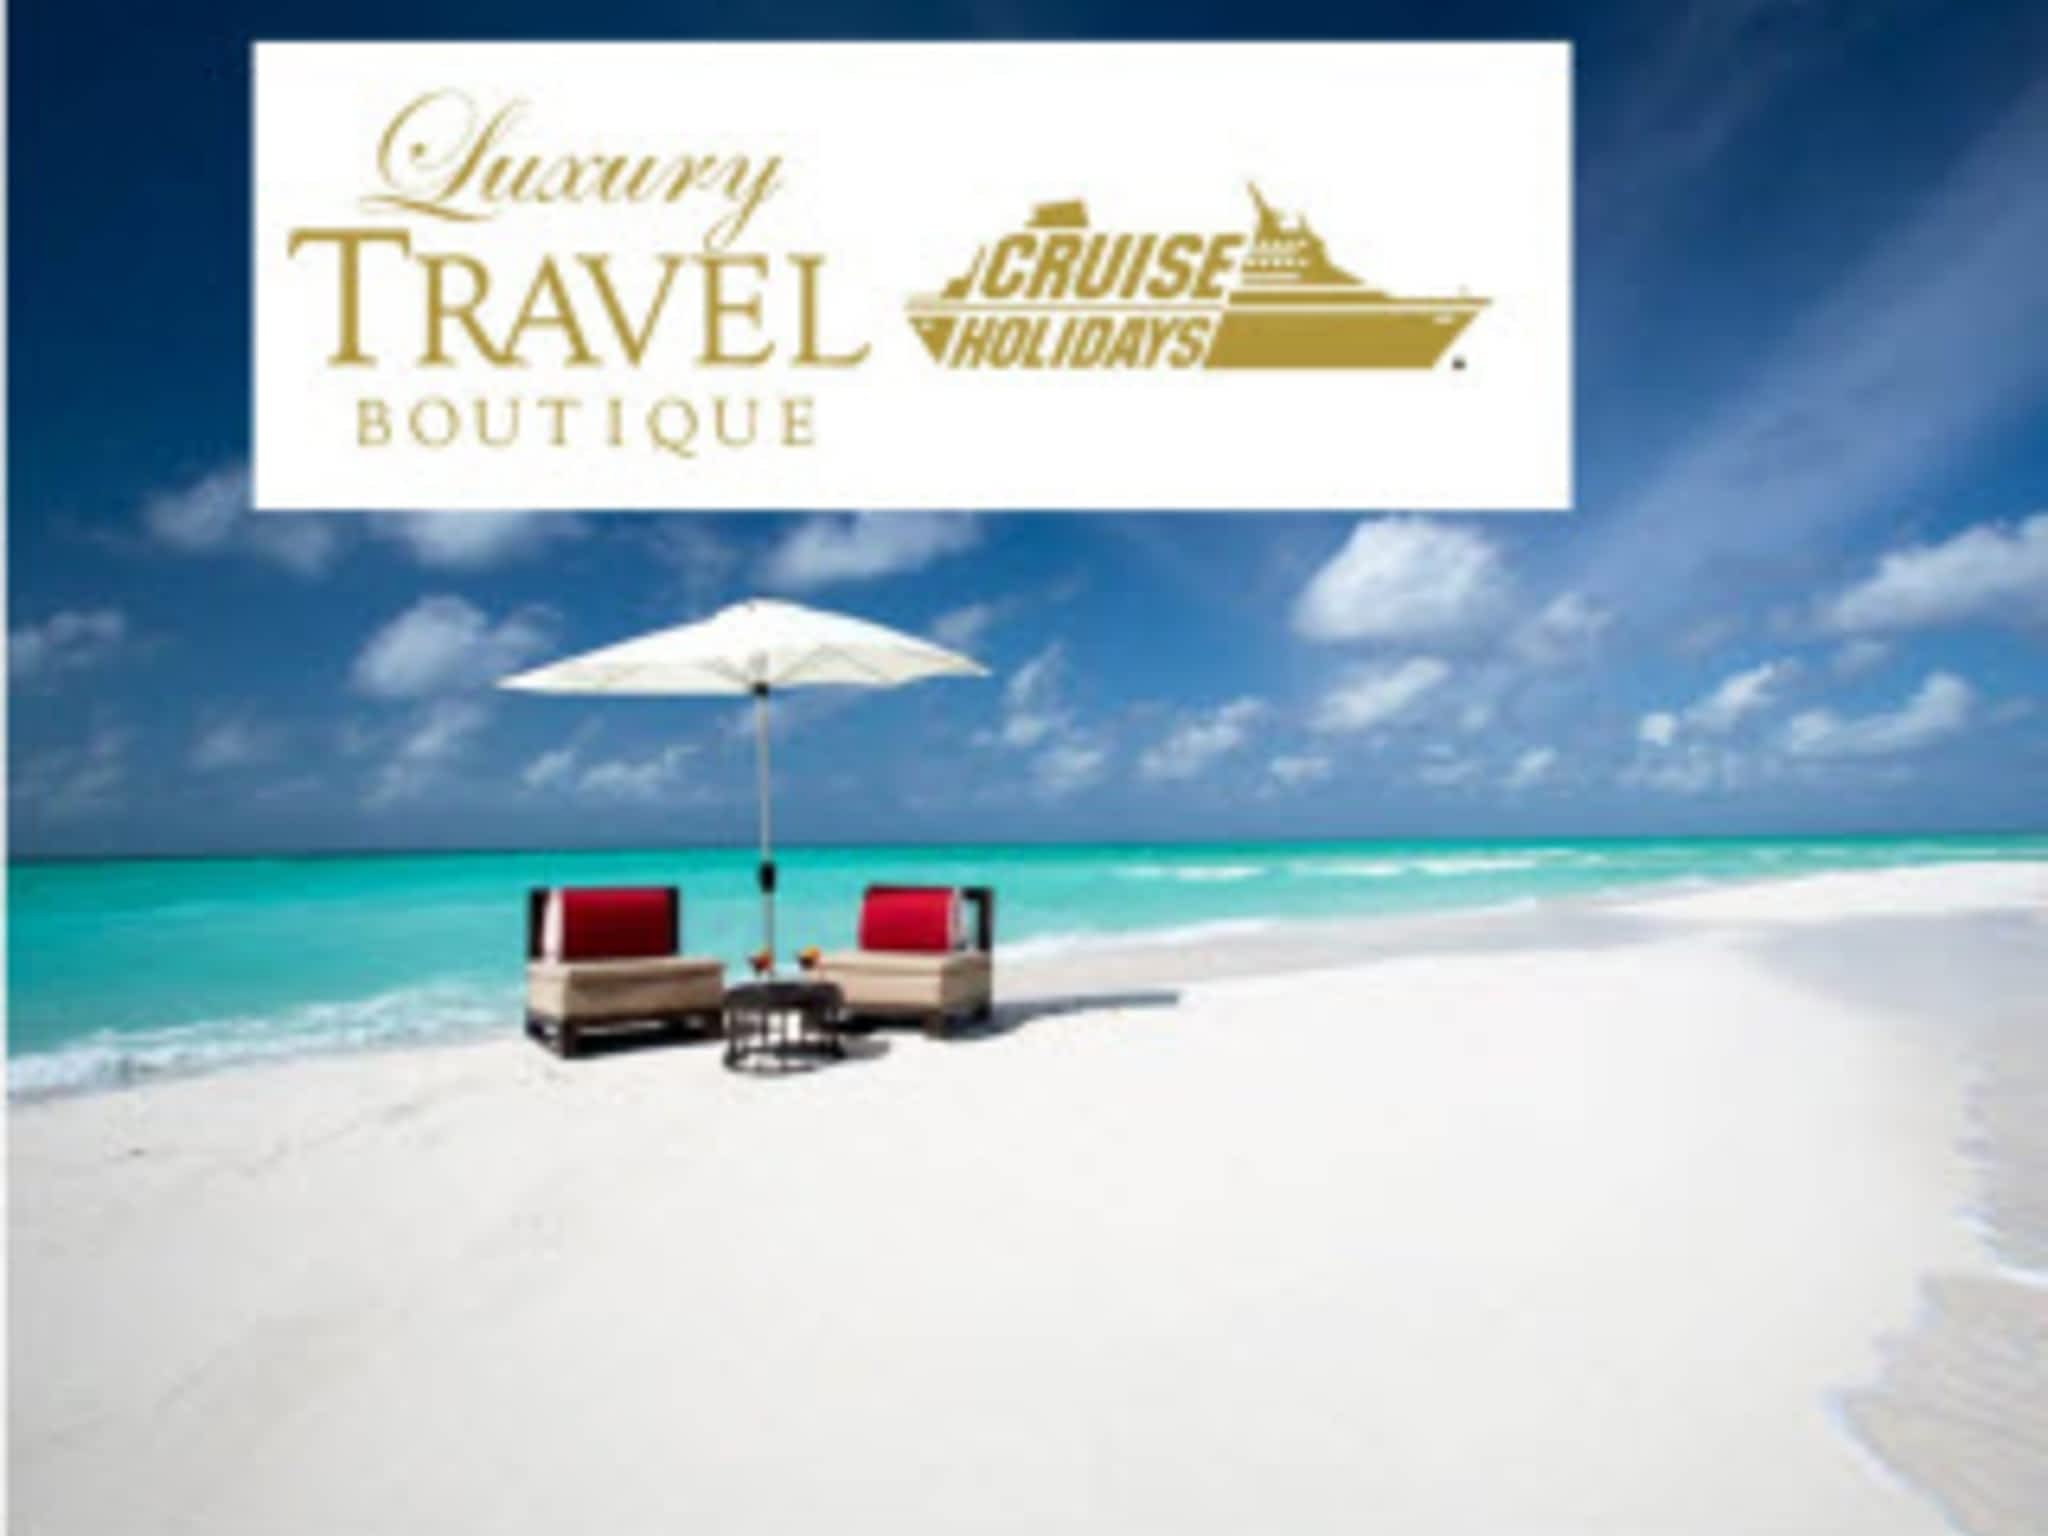 photo Cruise Holidays Luxury Travel Boutique